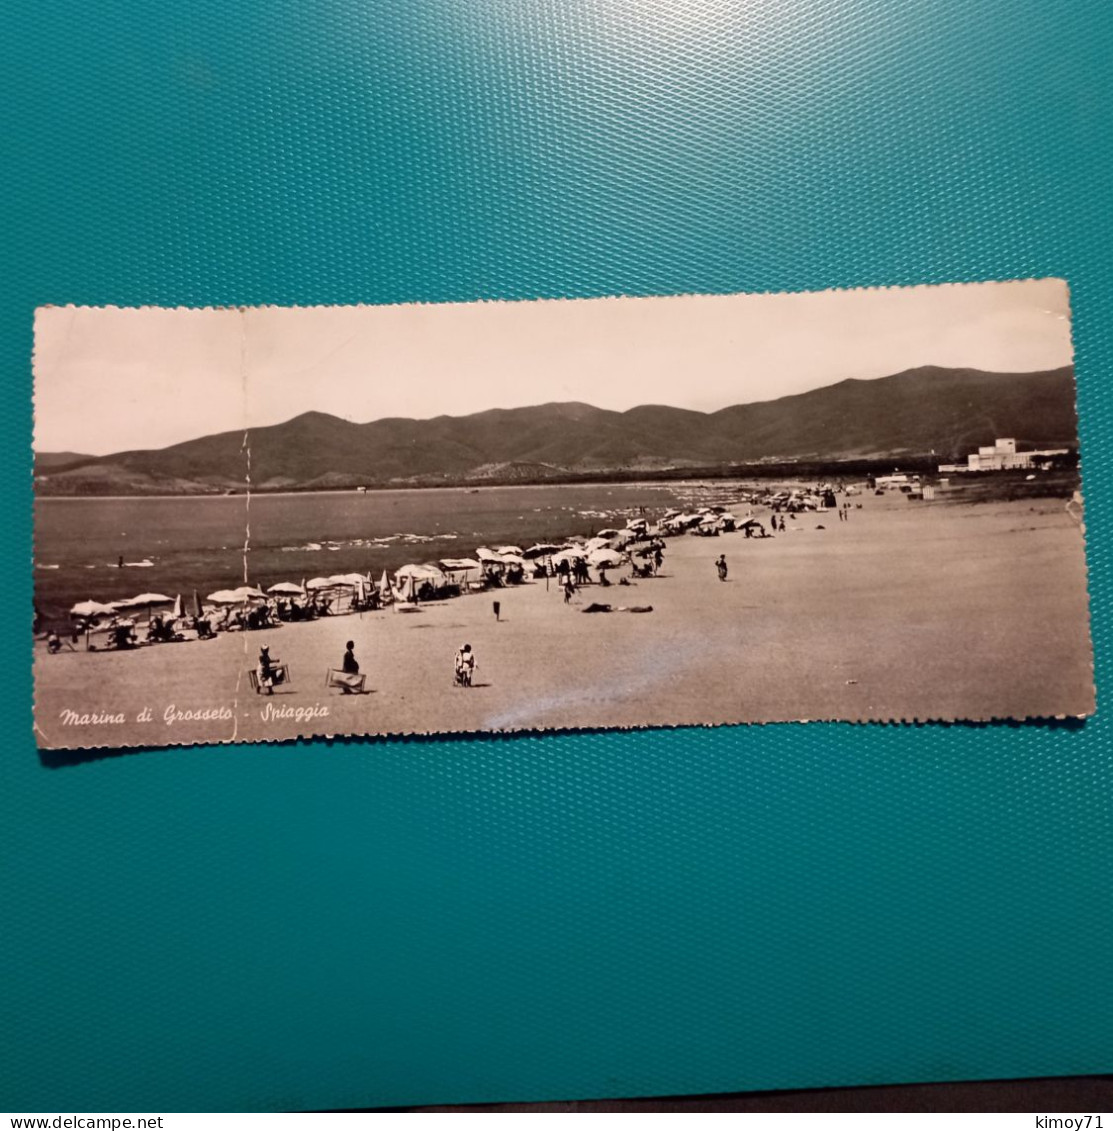 Cartolina Marina Di Grosseto - Spiaggia. Viaggiata 1956 - Grosseto